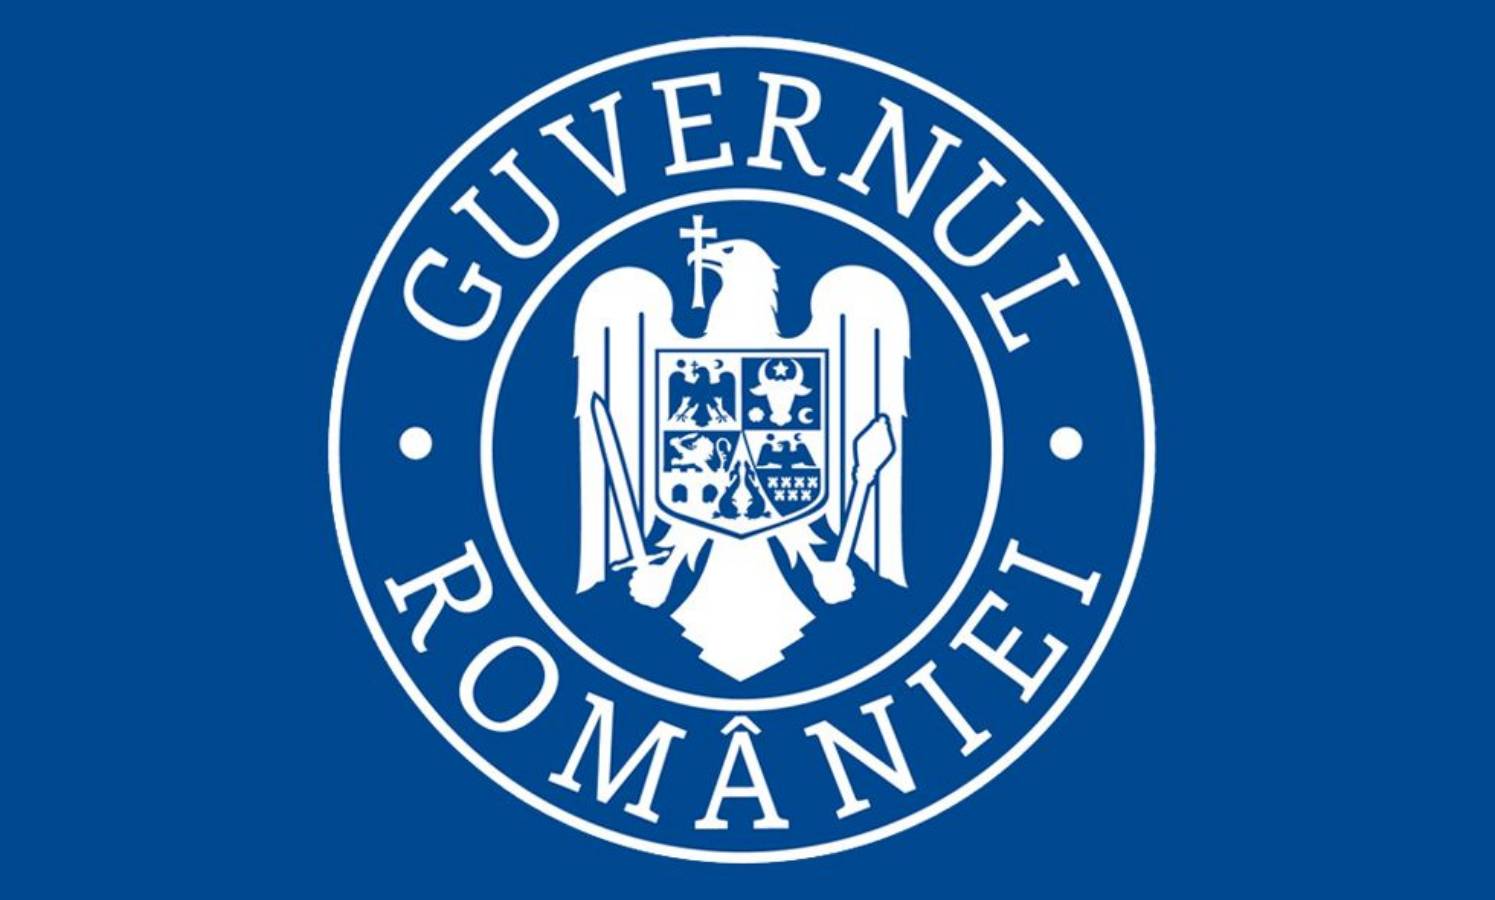 Guvernul Romaniei Vestea proasta masti gratuite